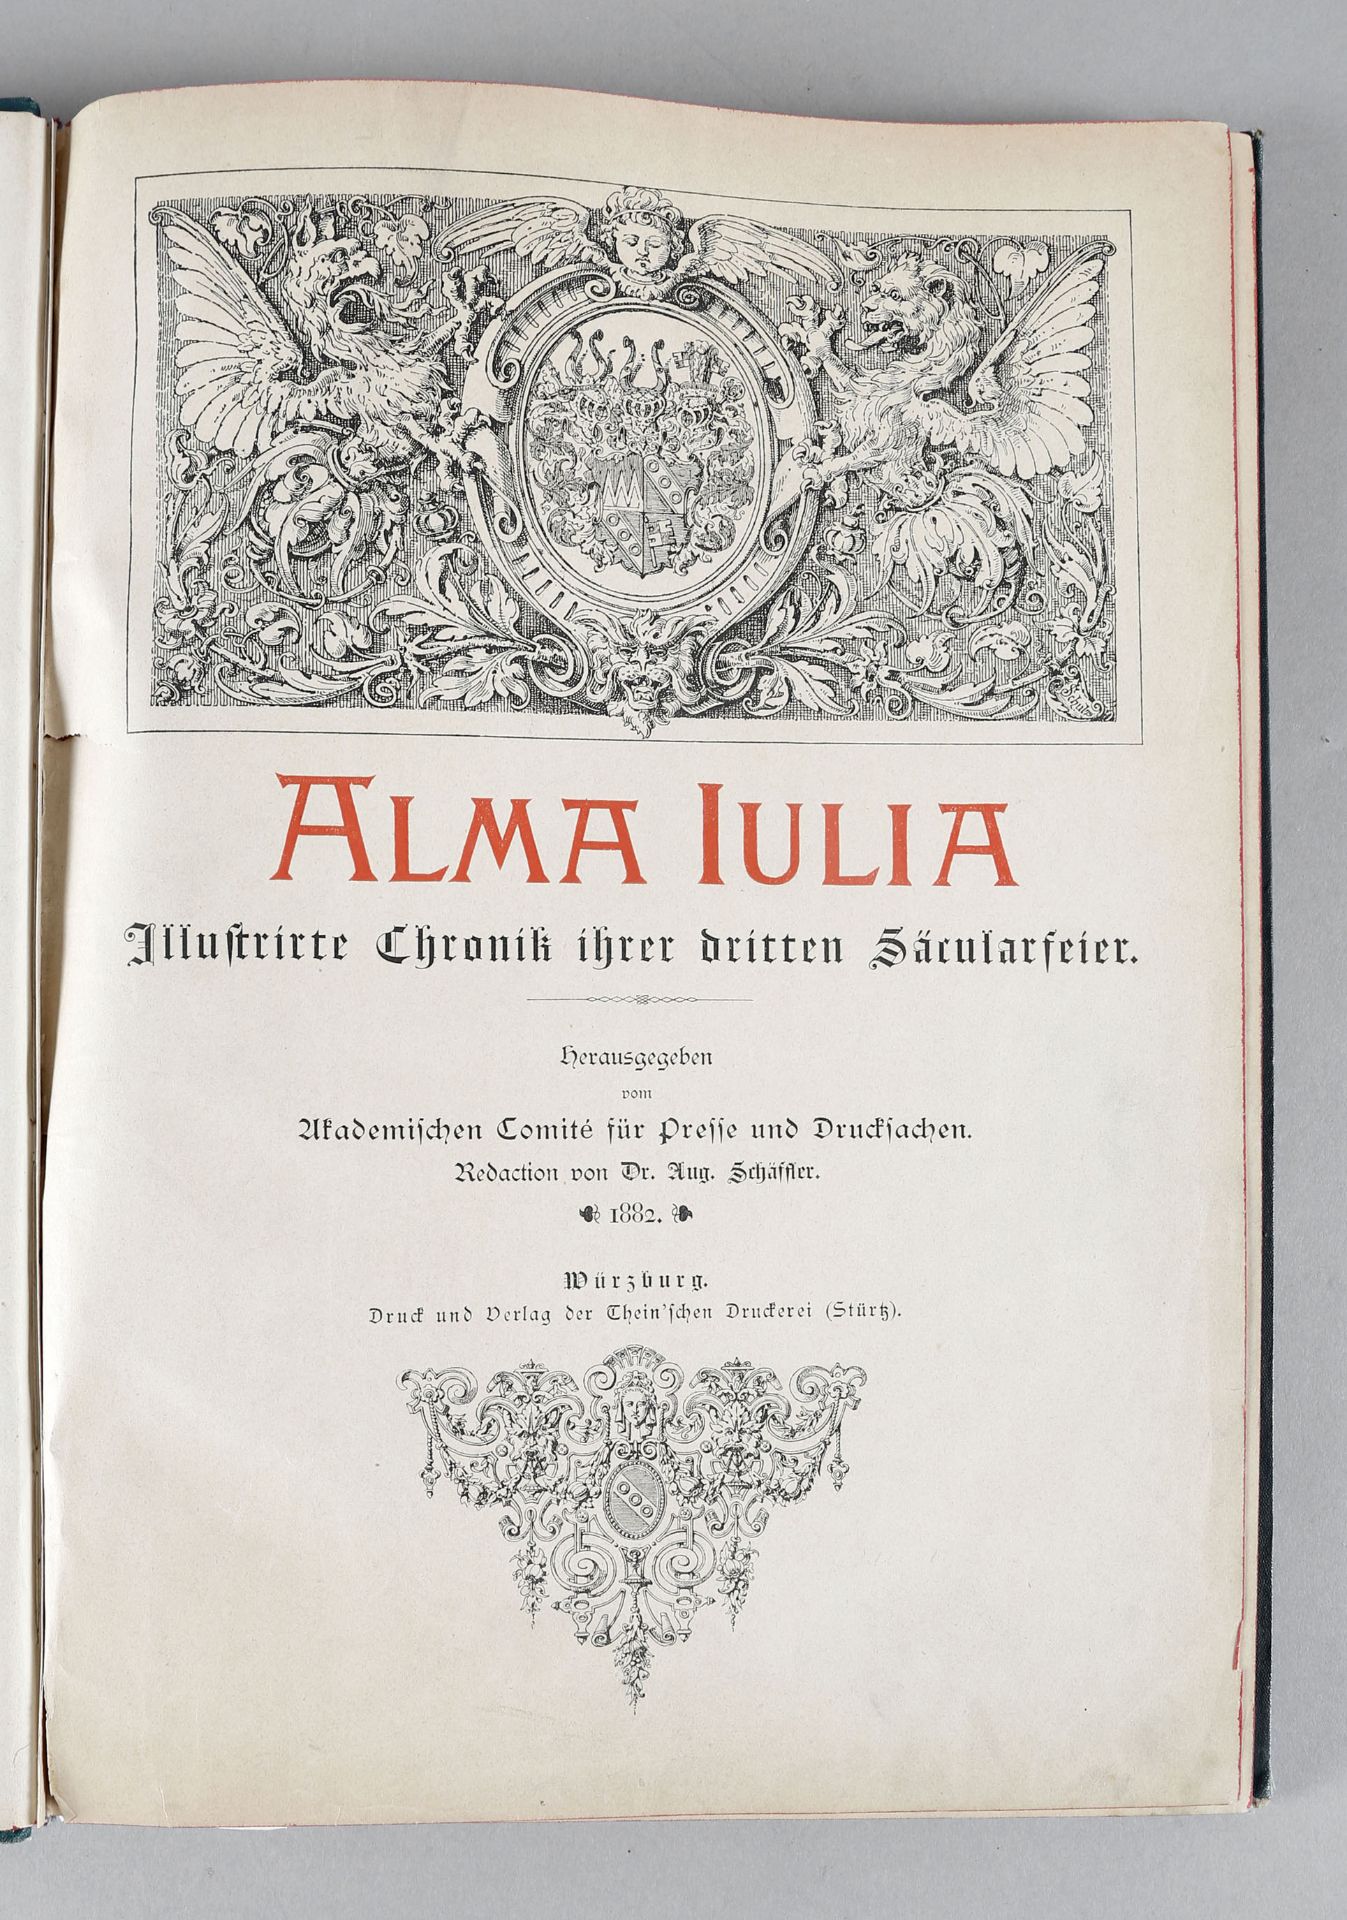 Alma Julia, Illustrierte Cronik ihrer dritten Säcularfeier